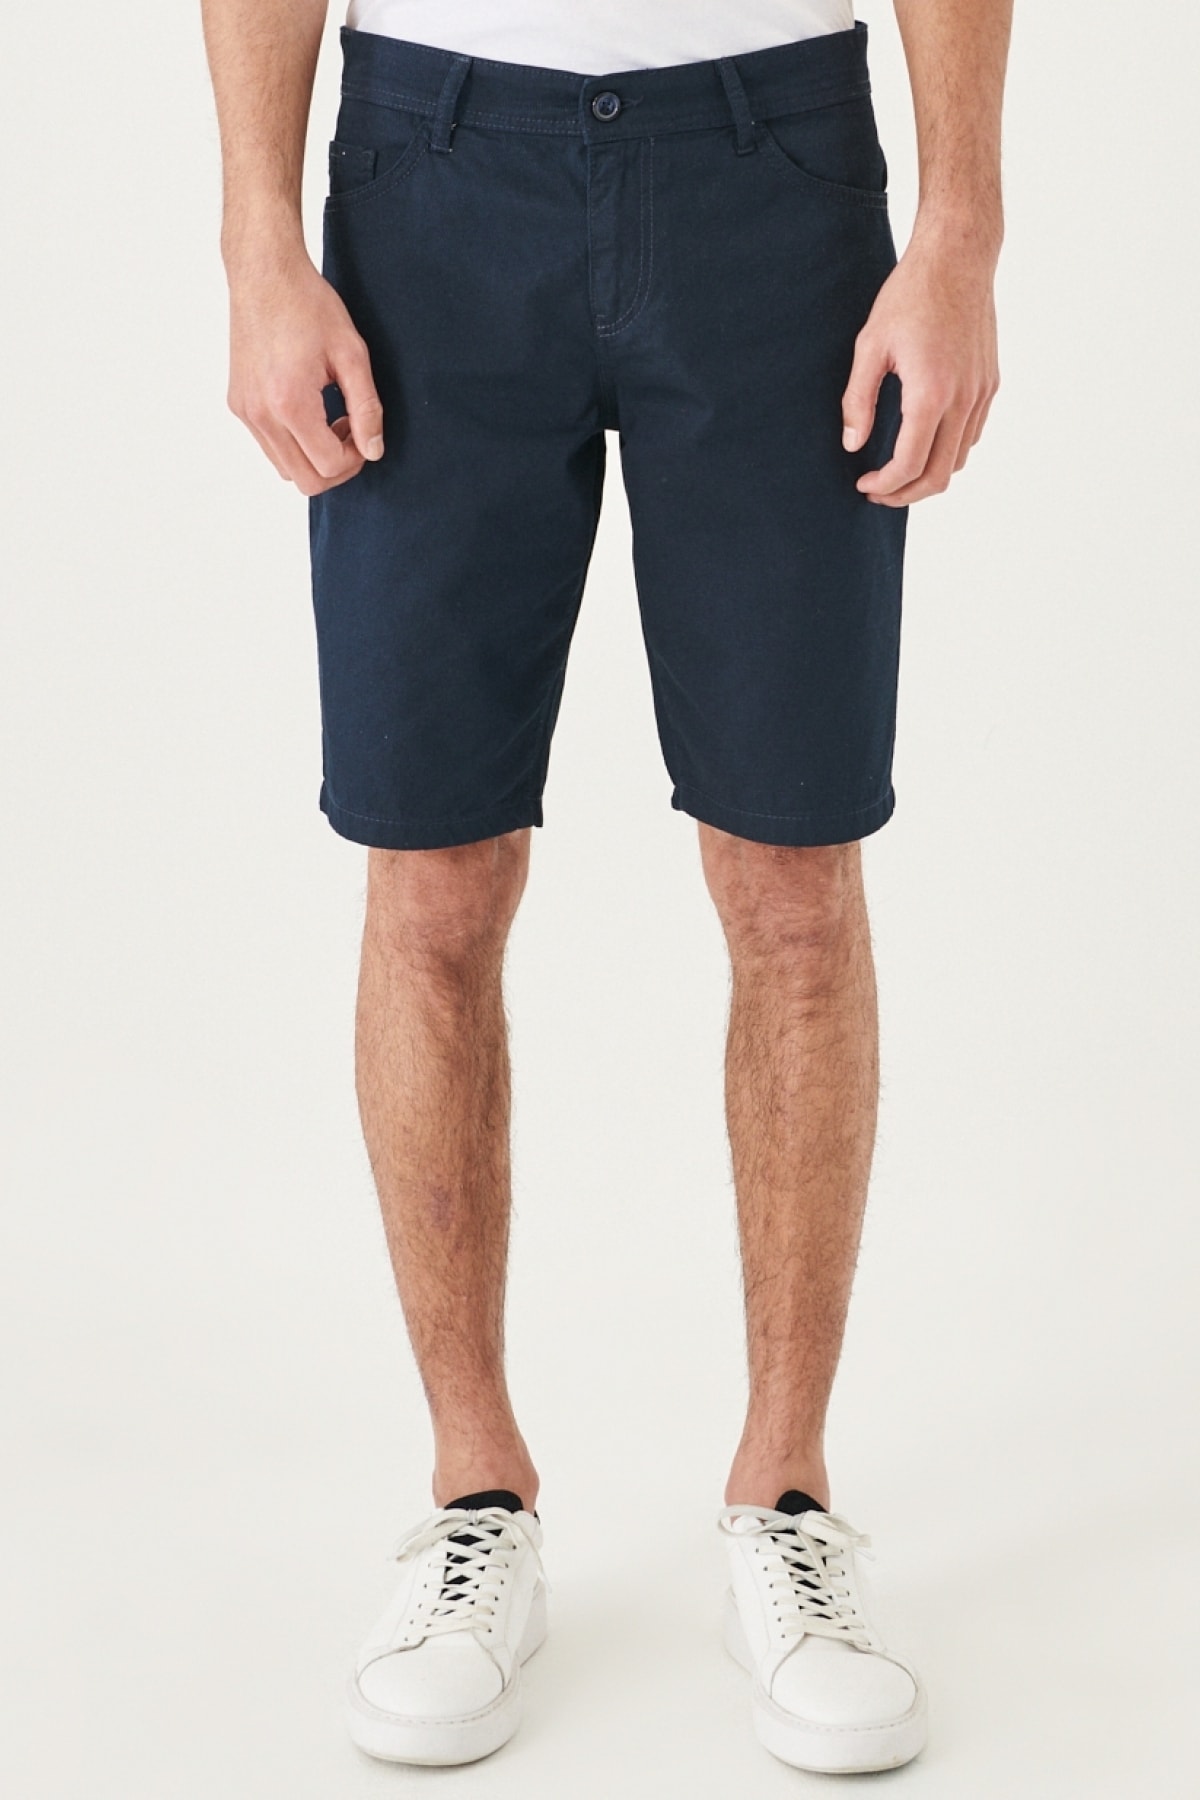 Levně AC&Co / Altınyıldız Classics Men's Navy Blue Slim Fit Slim Fit Dobby Fitted 100% Cotton Casual Chino Shorts.